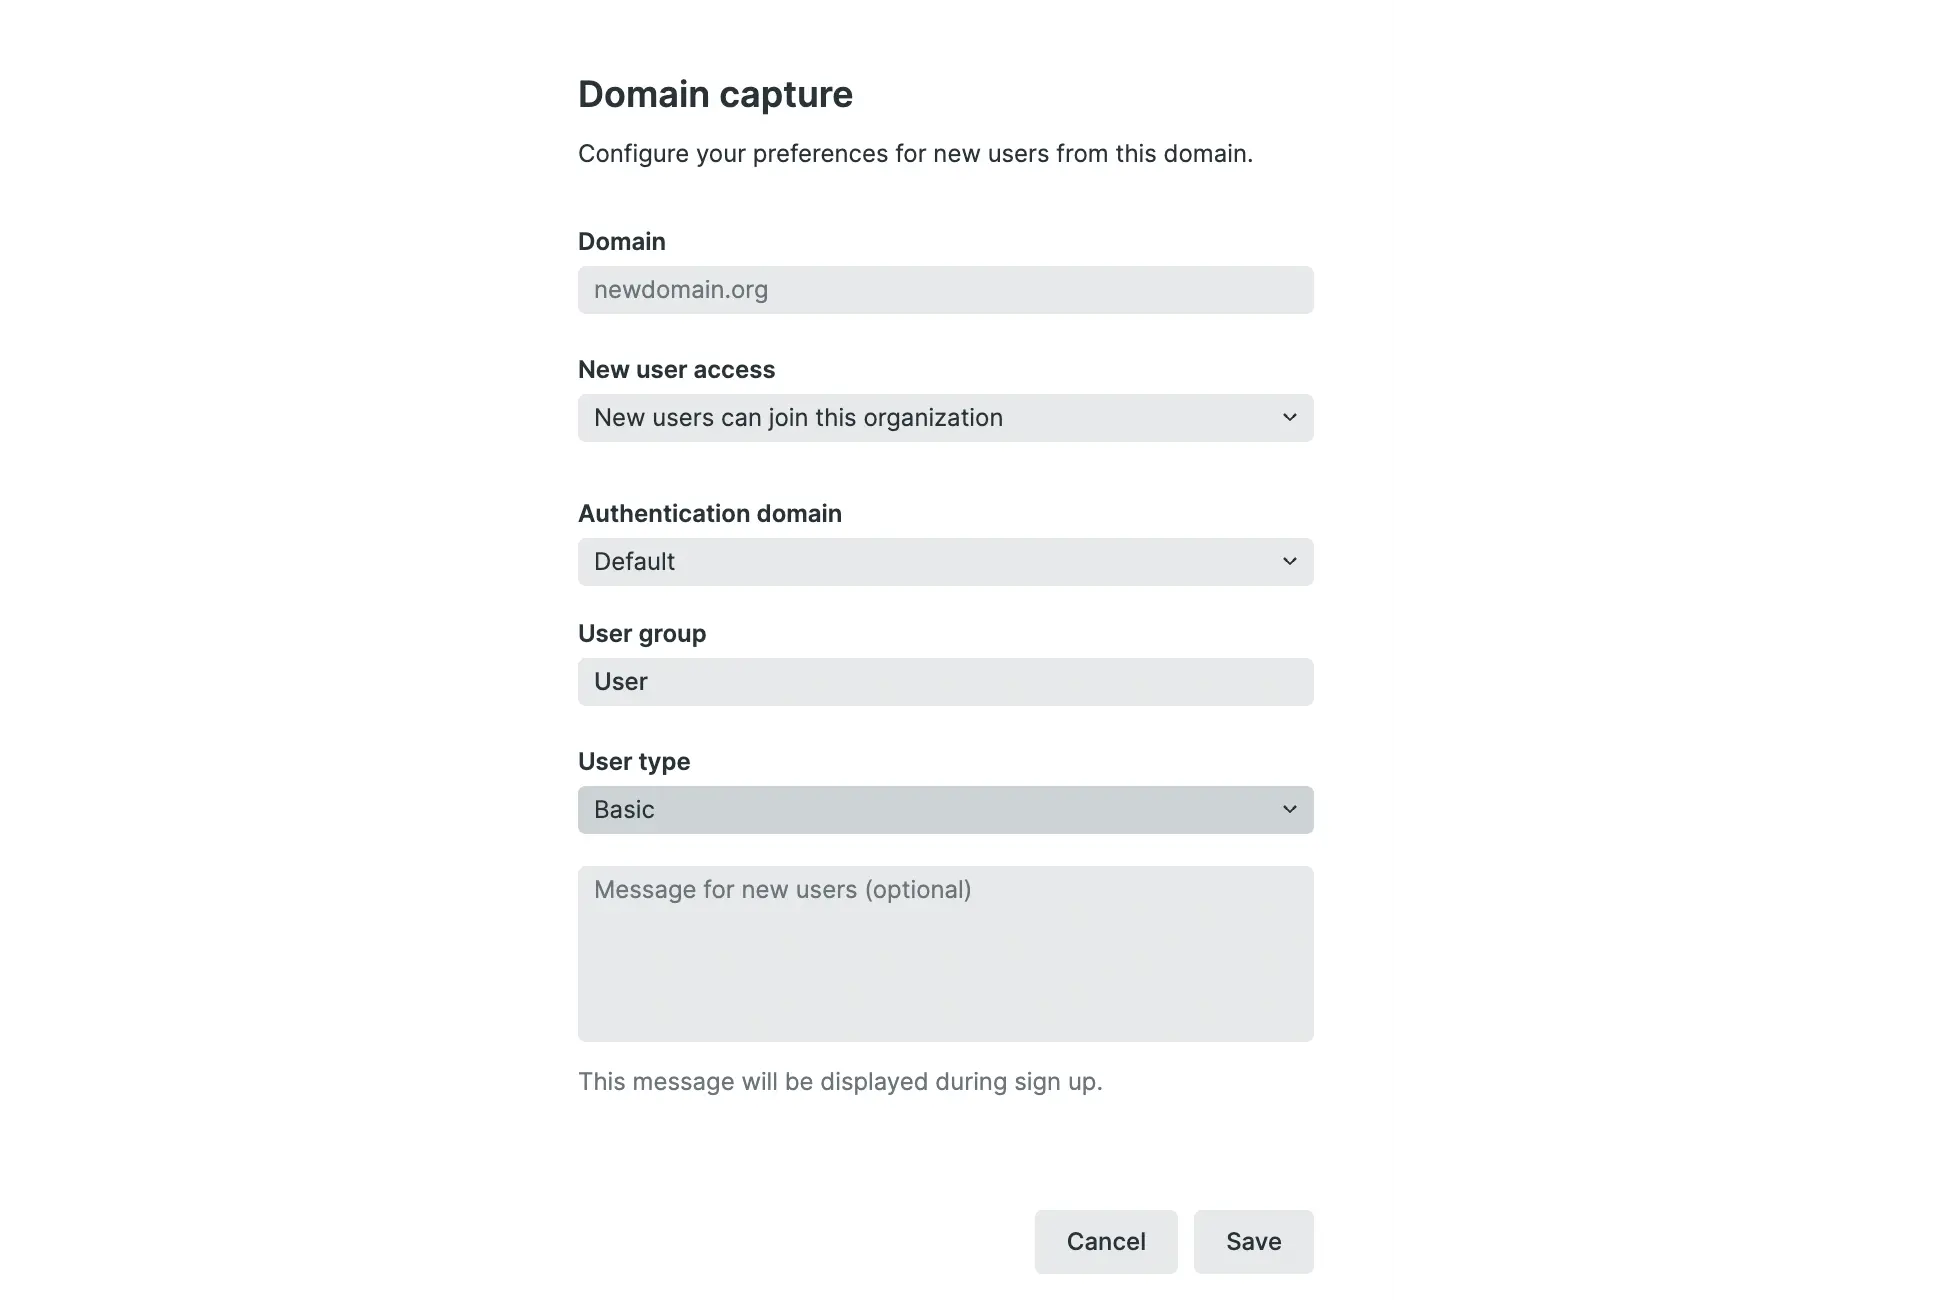 Screenshot of domain capture settings